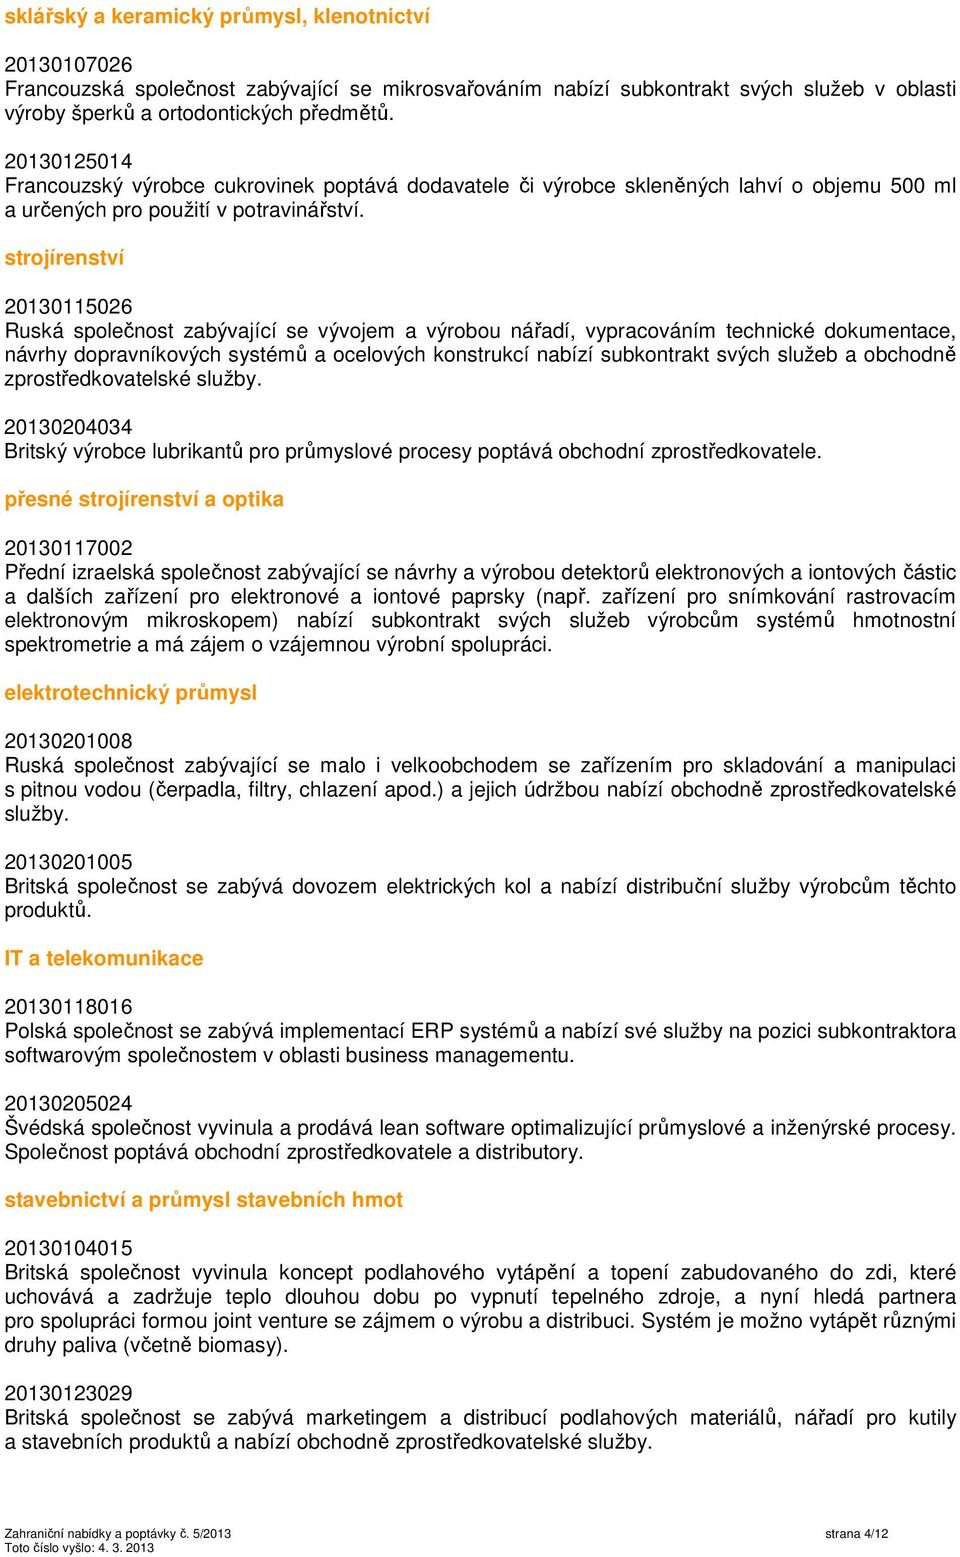 strojírenství 20130115026 Ruská společnost zabývající se vývojem a výrobou nářadí, vypracováním technické dokumentace, návrhy dopravníkových systémů a ocelových konstrukcí nabízí subkontrakt svých